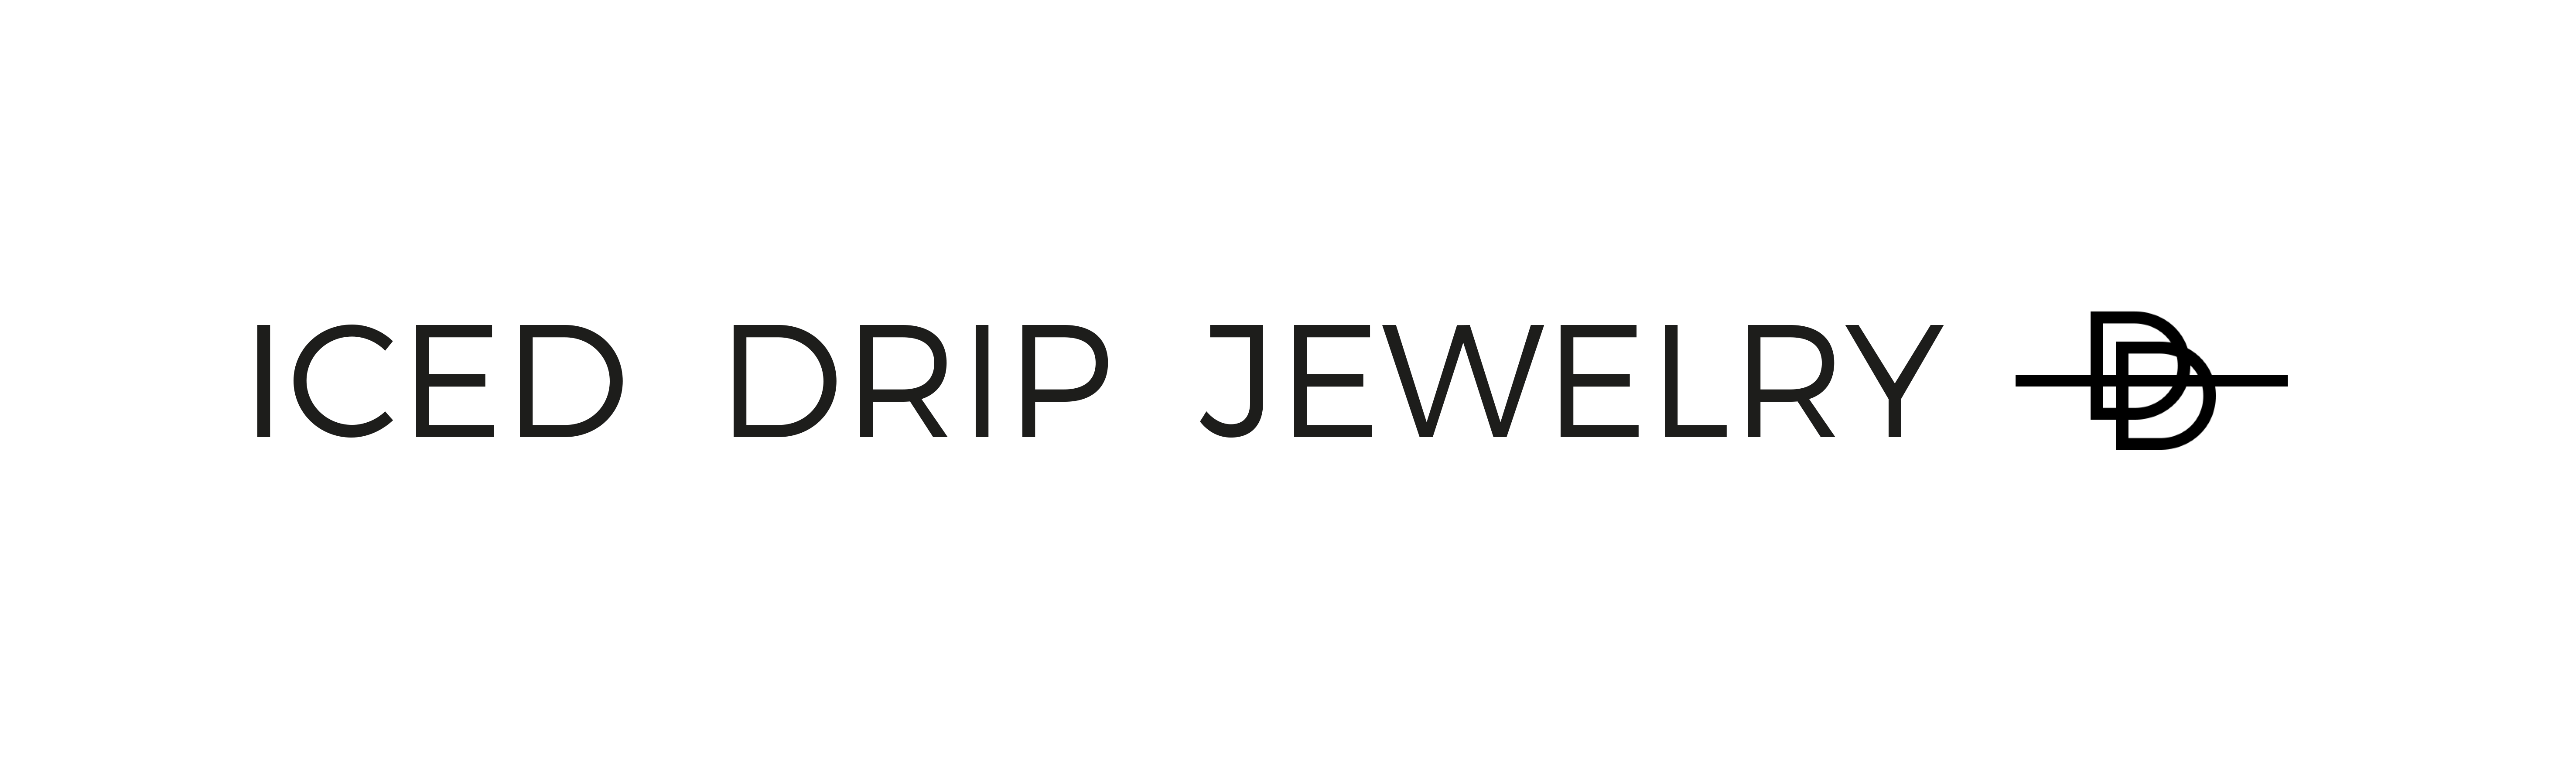 www.iced-drip-jewelry.de